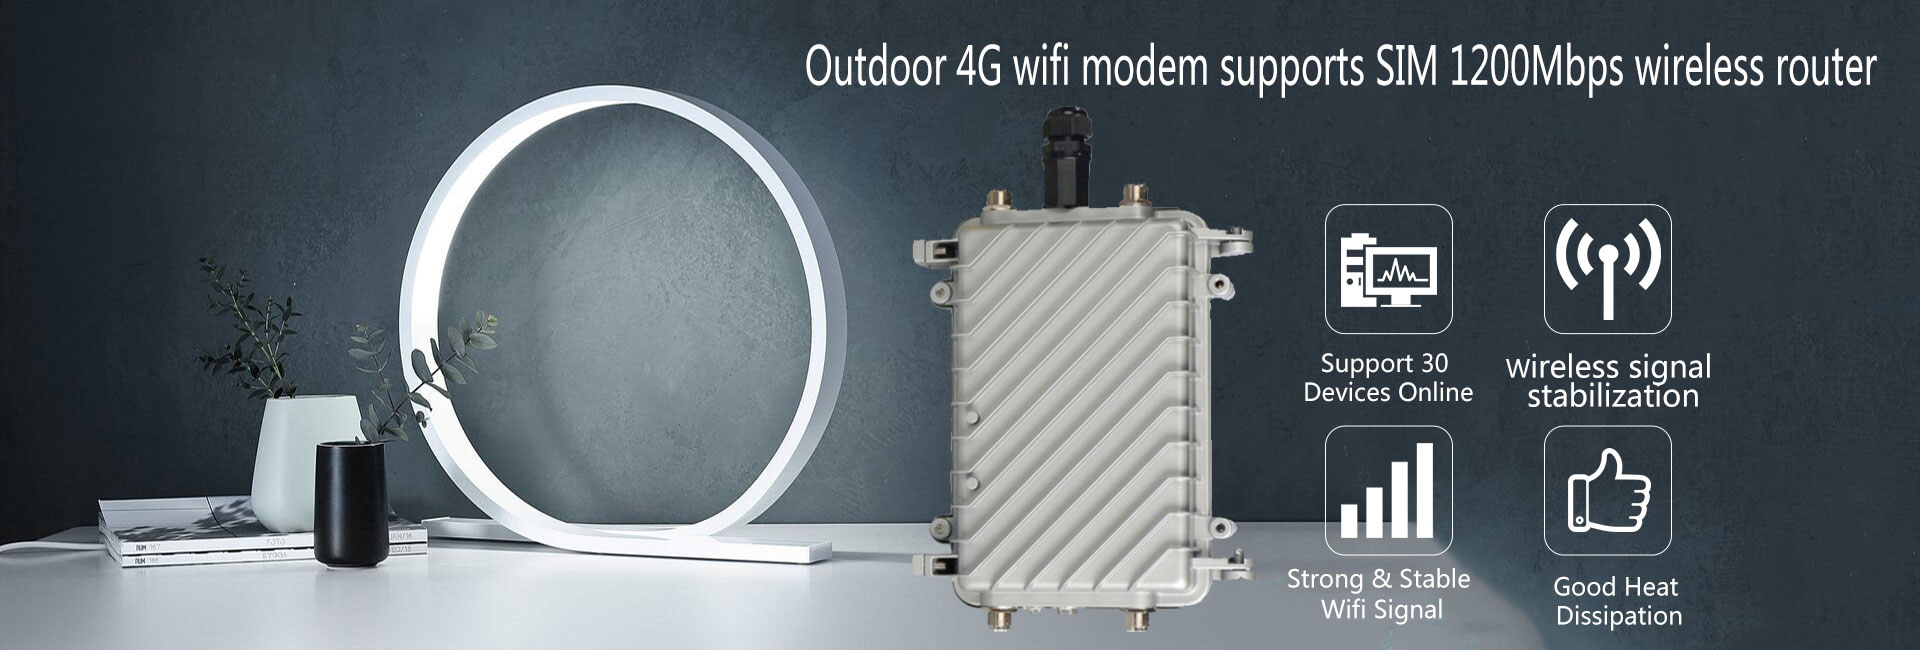 ข้อมูลเพิ่มเติมของ （คลังสินค้ากรุงเทพ）เราเตอร์ใส่ซิม ตัวปล่อยwifi ซิม Router 4G เราเตอร์ 4g เร้าเตอร์ใสซิม router ราวเตอร์wifi 32  เราเตอร์ใส่ซิม 4G ราวเตอร์ใส่ซิม ใส่ซิมปล่อย Wi-Fi 300Mbps 4G LTE sim เร้าเตอร์ใสซิม ตัวรับสัญญาณ wifi